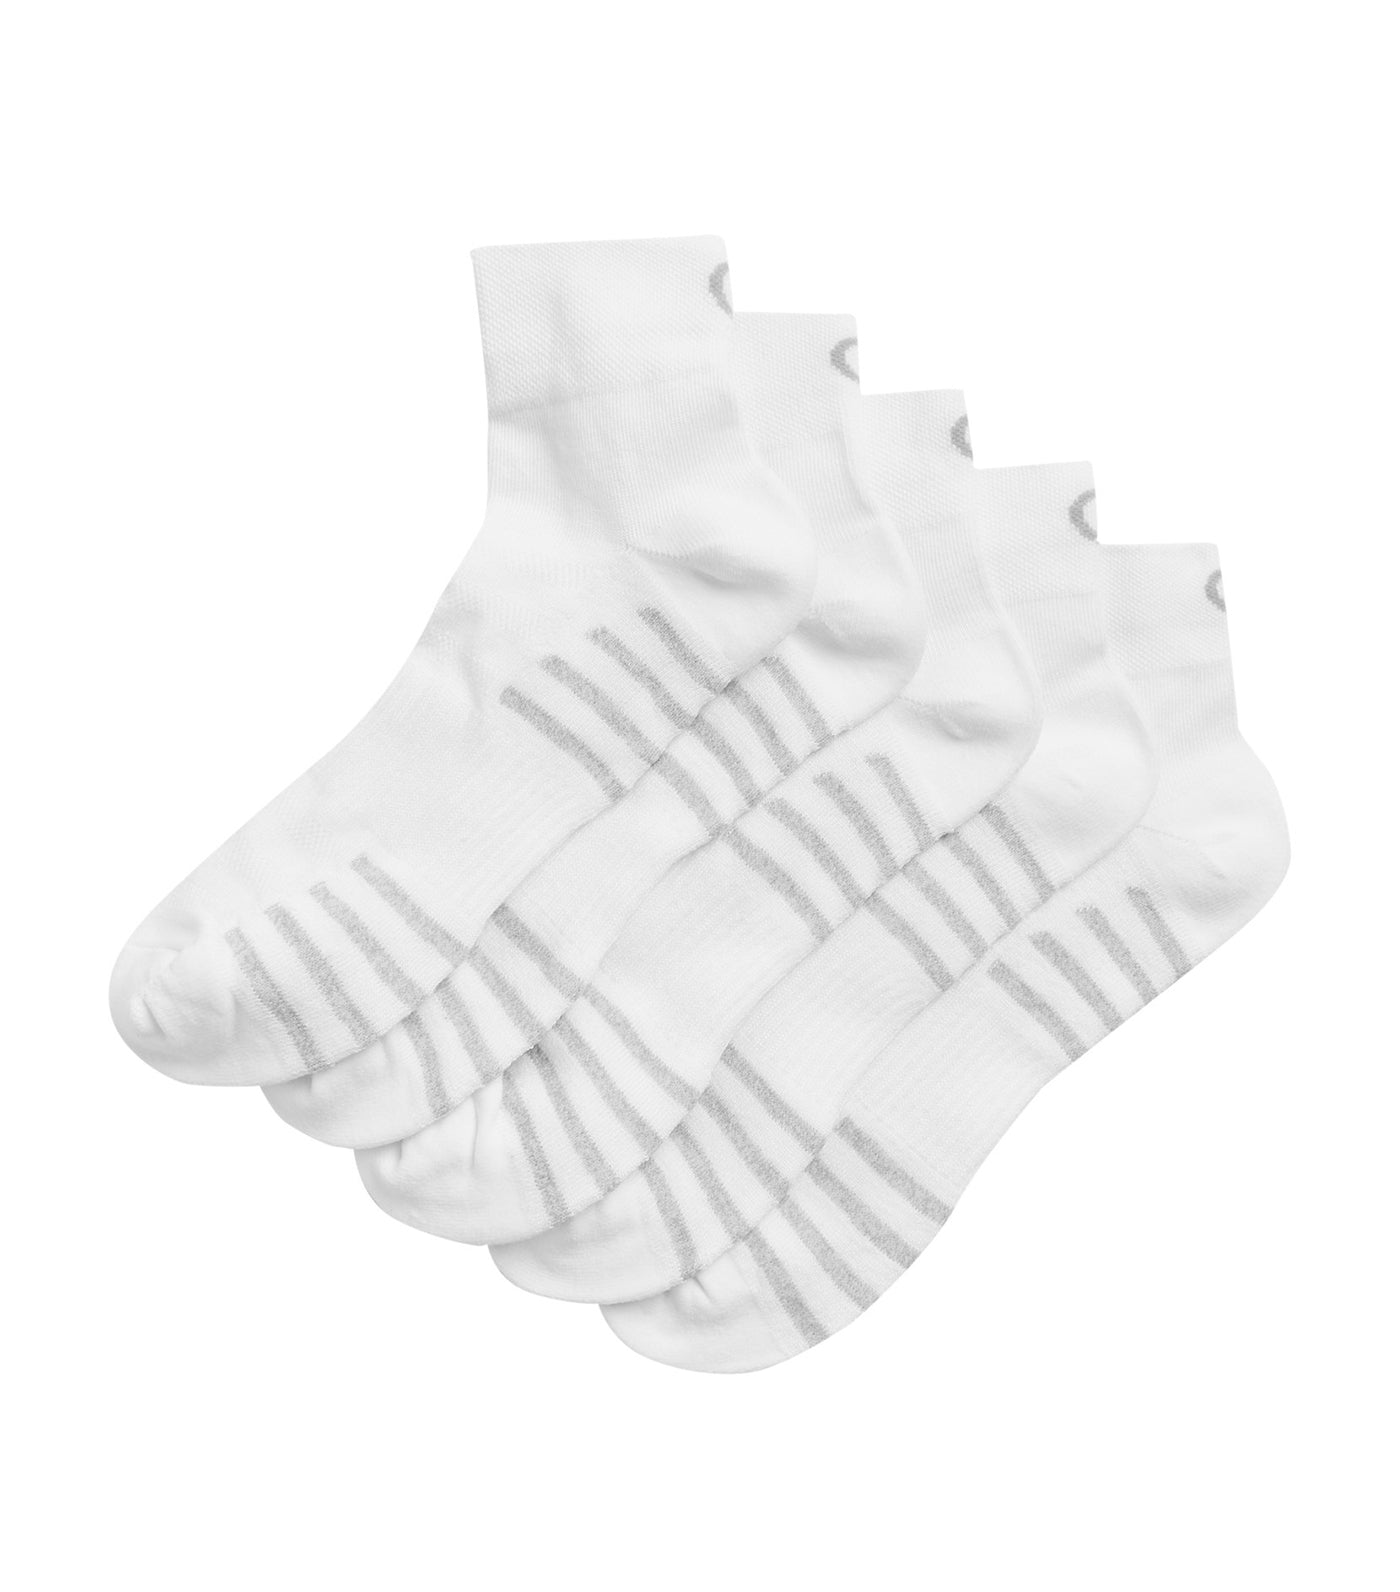 5 PACK White Trainer Socks